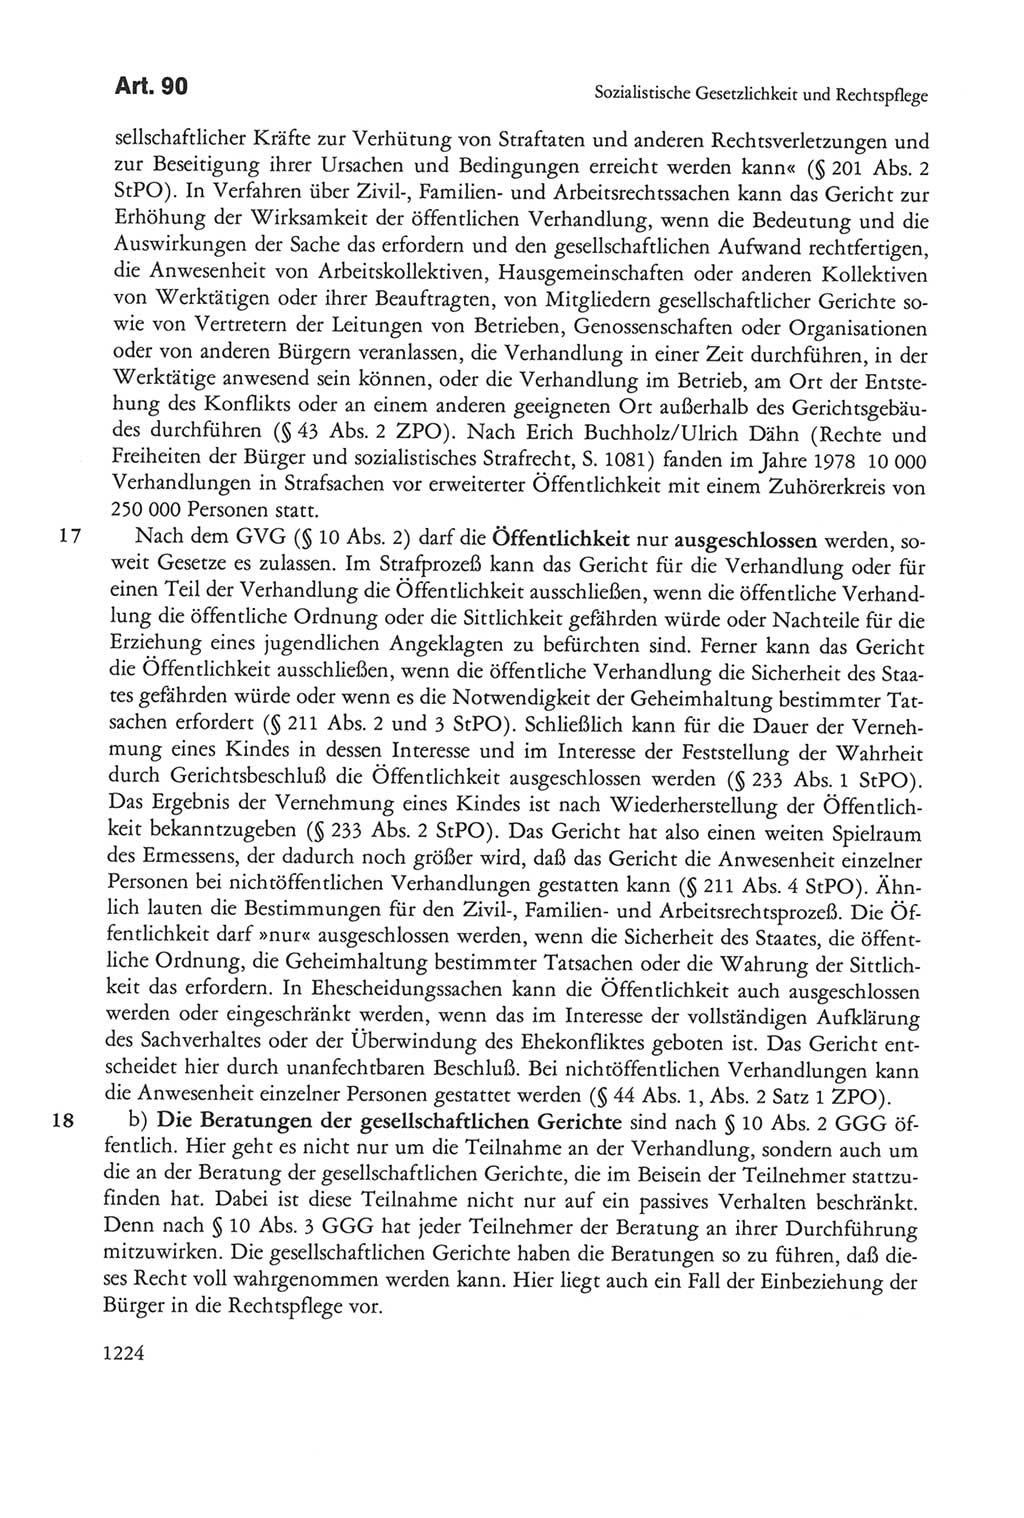 Die sozialistische Verfassung der Deutschen Demokratischen Republik (DDR), Kommentar 1982, Seite 1224 (Soz. Verf. DDR Komm. 1982, S. 1224)